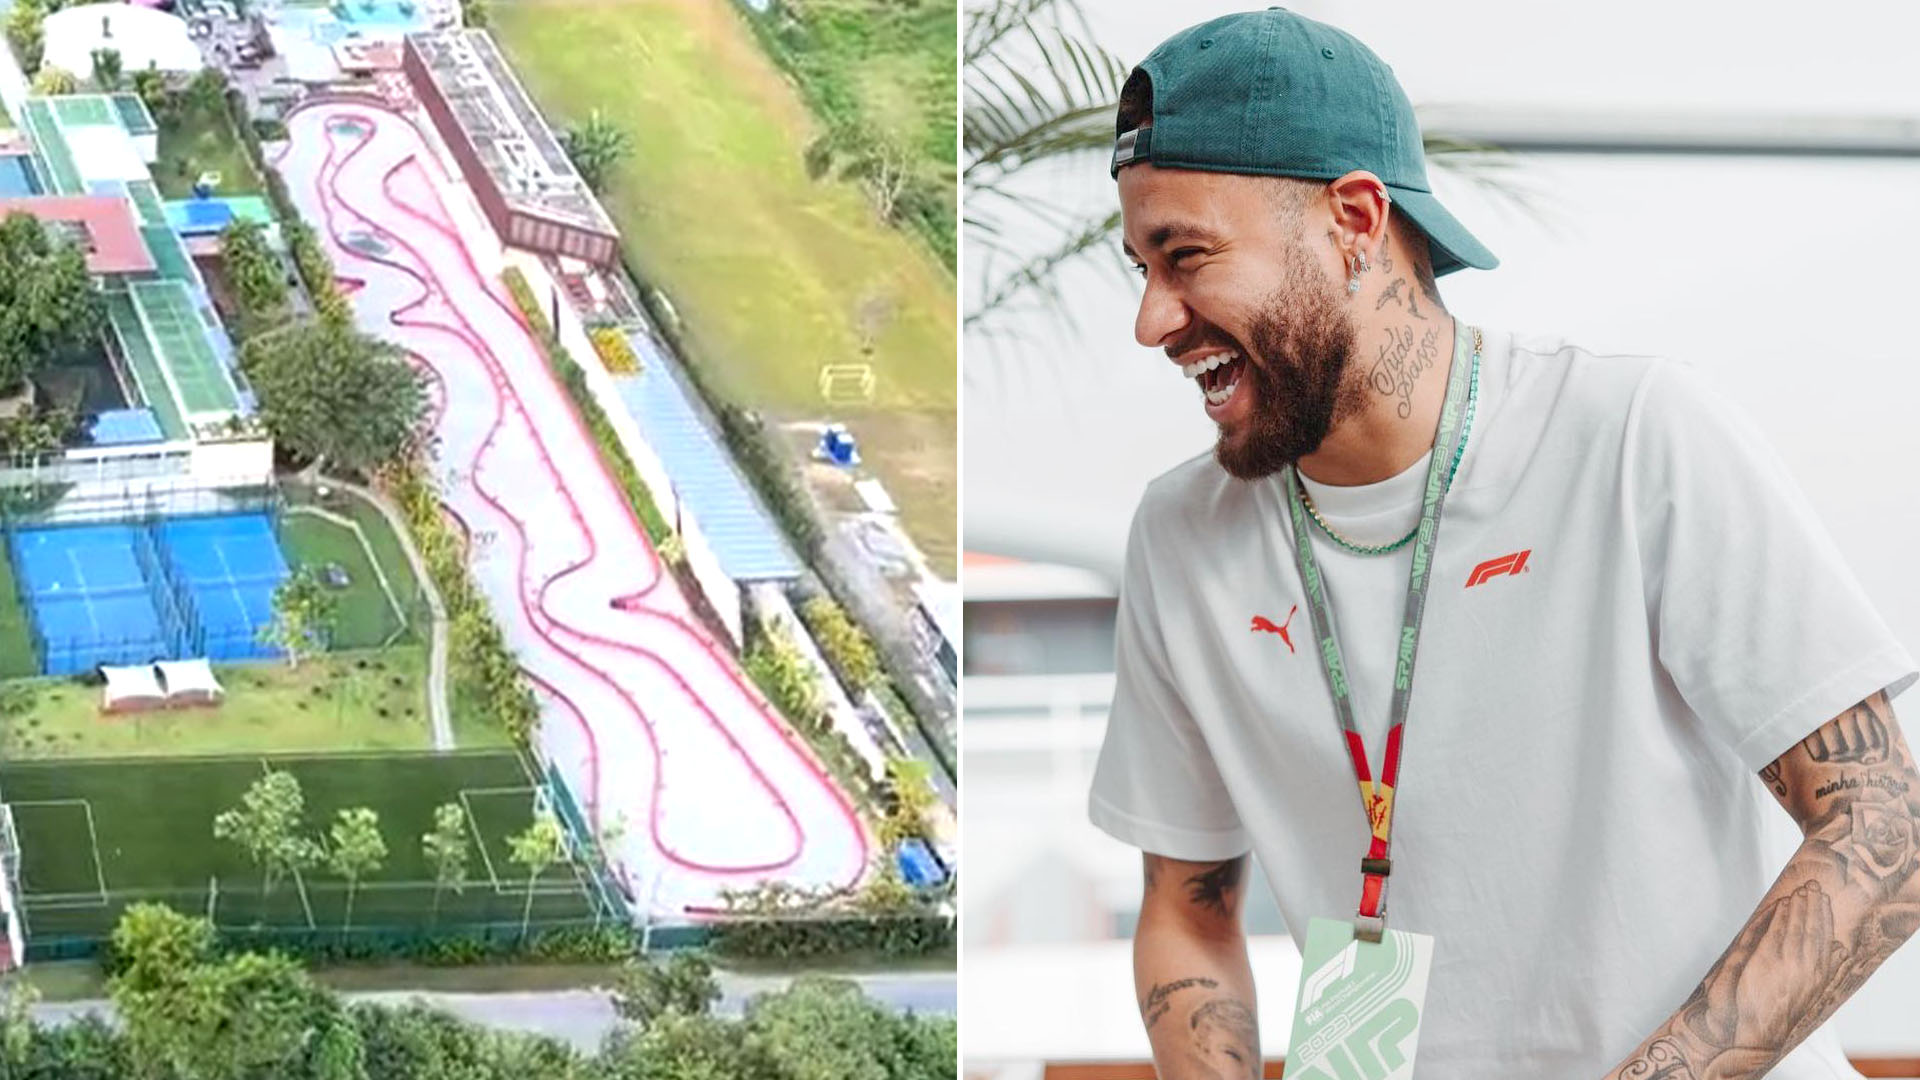 Lago artificial, pista de karting y helipuerto: así es la mansión de la polémica donde Neymar pasa sus vacaciones